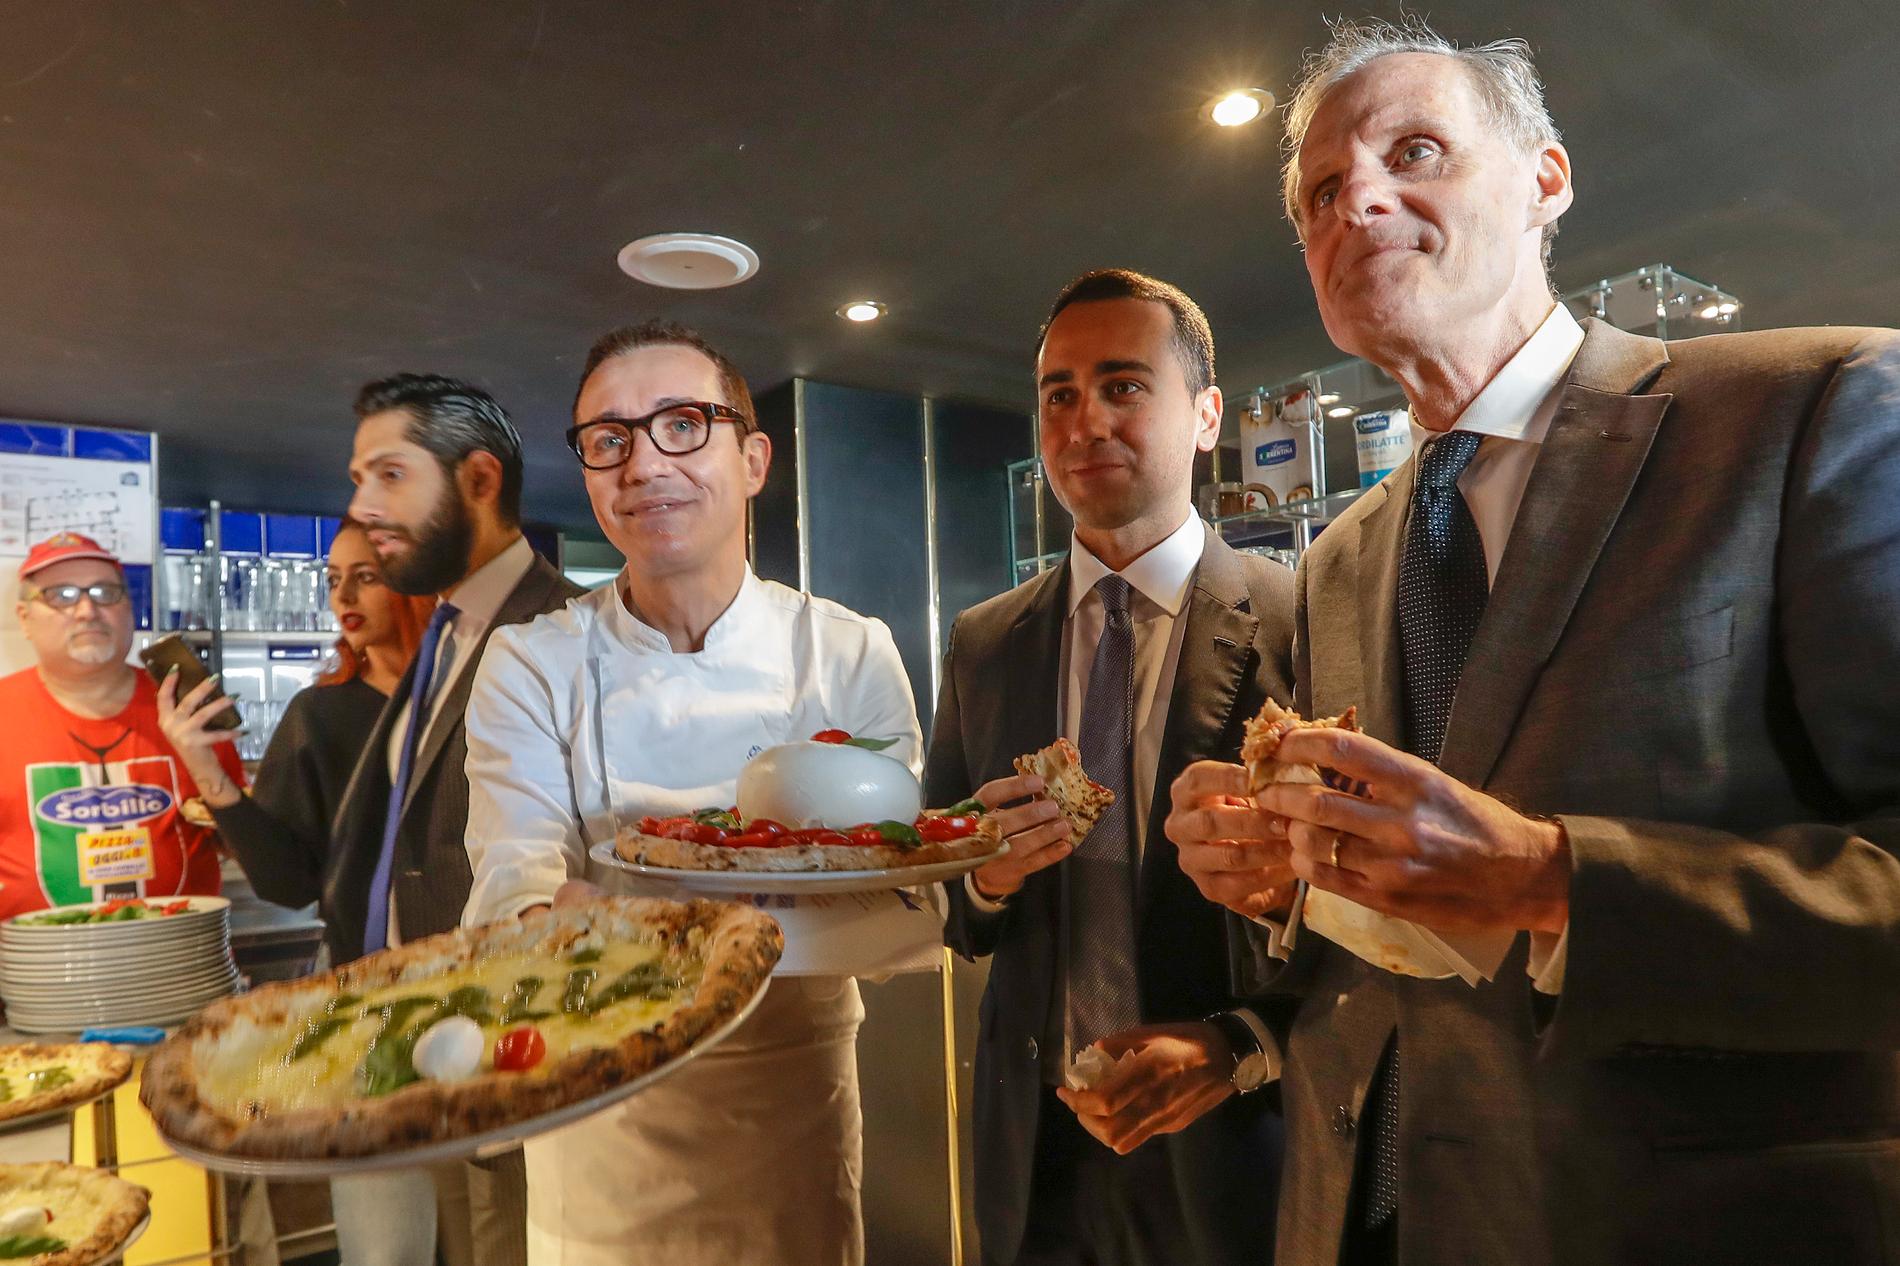 Italiens utrikesminister Luigi Di Maio, i mitten, äter pizza tillsammans med Frankrikes Romambassadör Christian Masset. Di Maio bjöd in ambassadören till pizzalunch sedan en fransk tv-kanal sänt ett kritiserat satirinslag om "coronapizza".